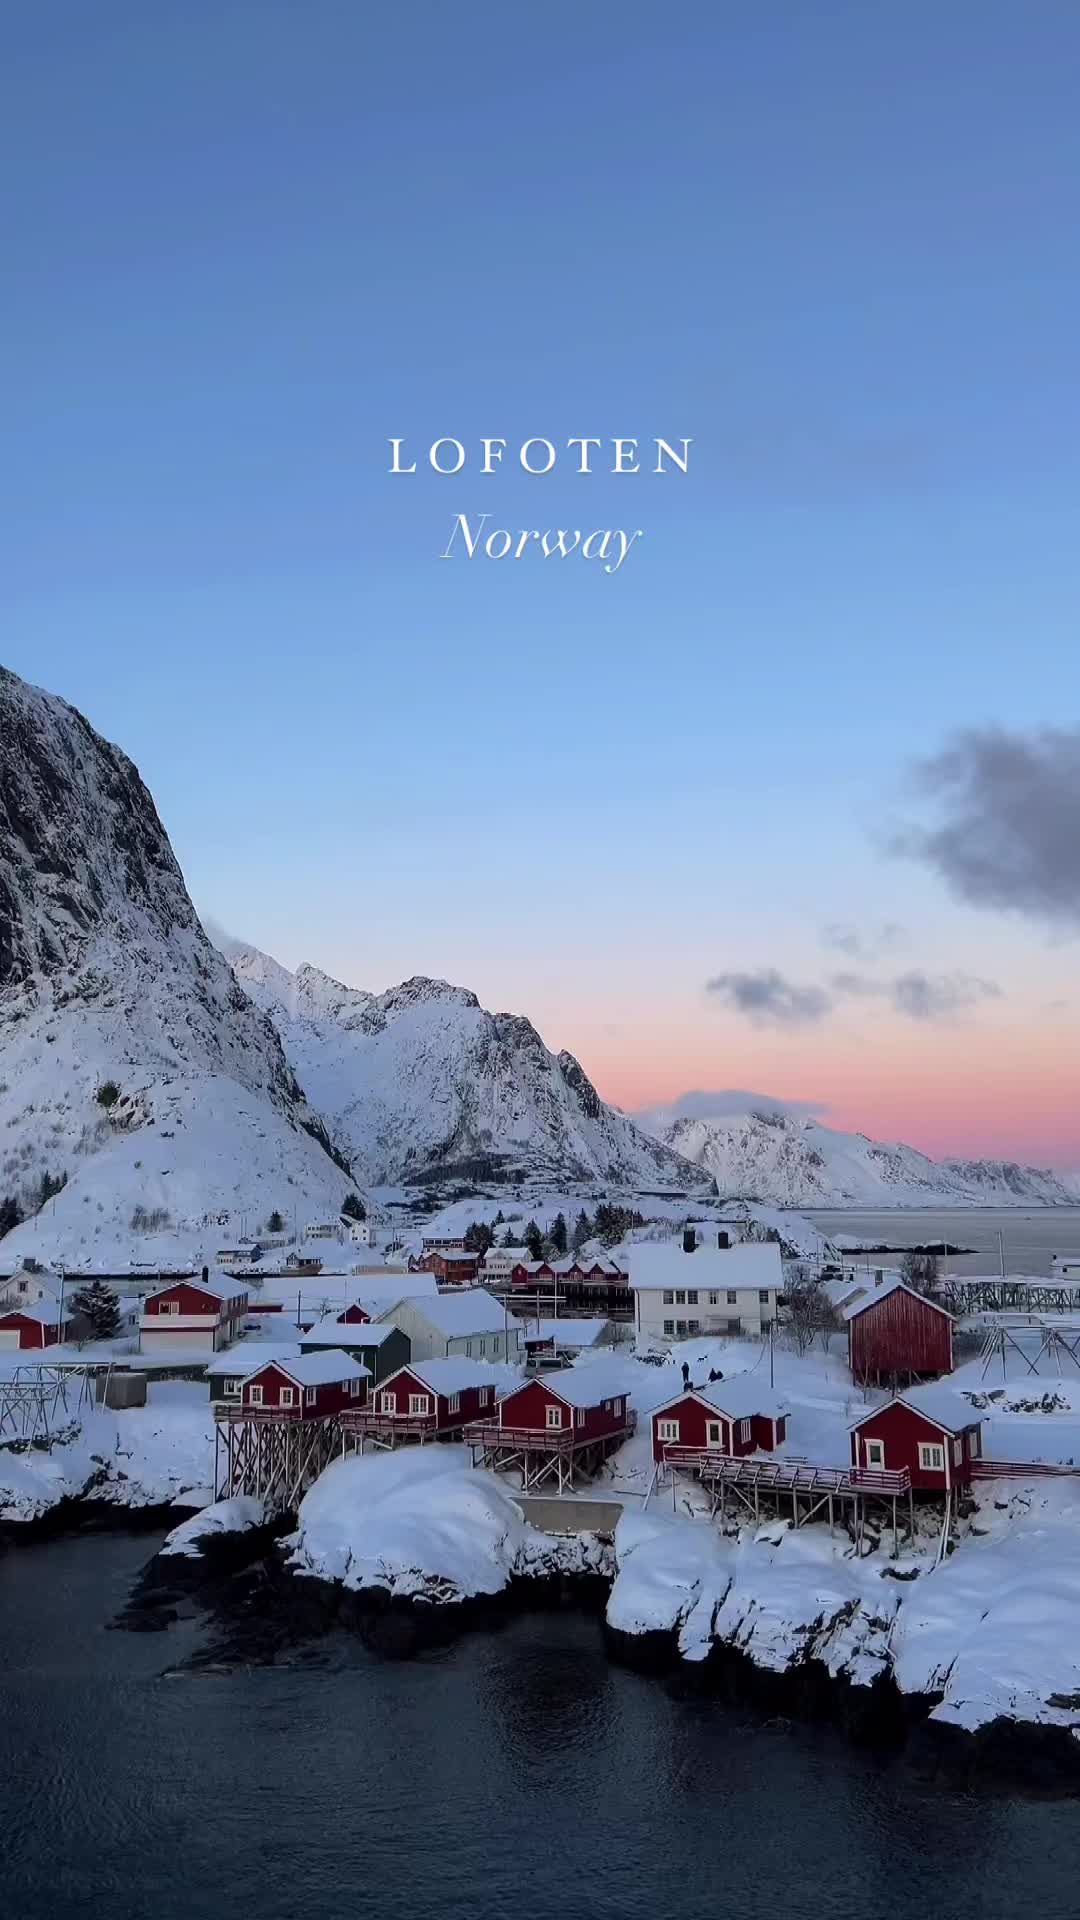 Winter Wonders of Lofoten Islands: Must-See Spots